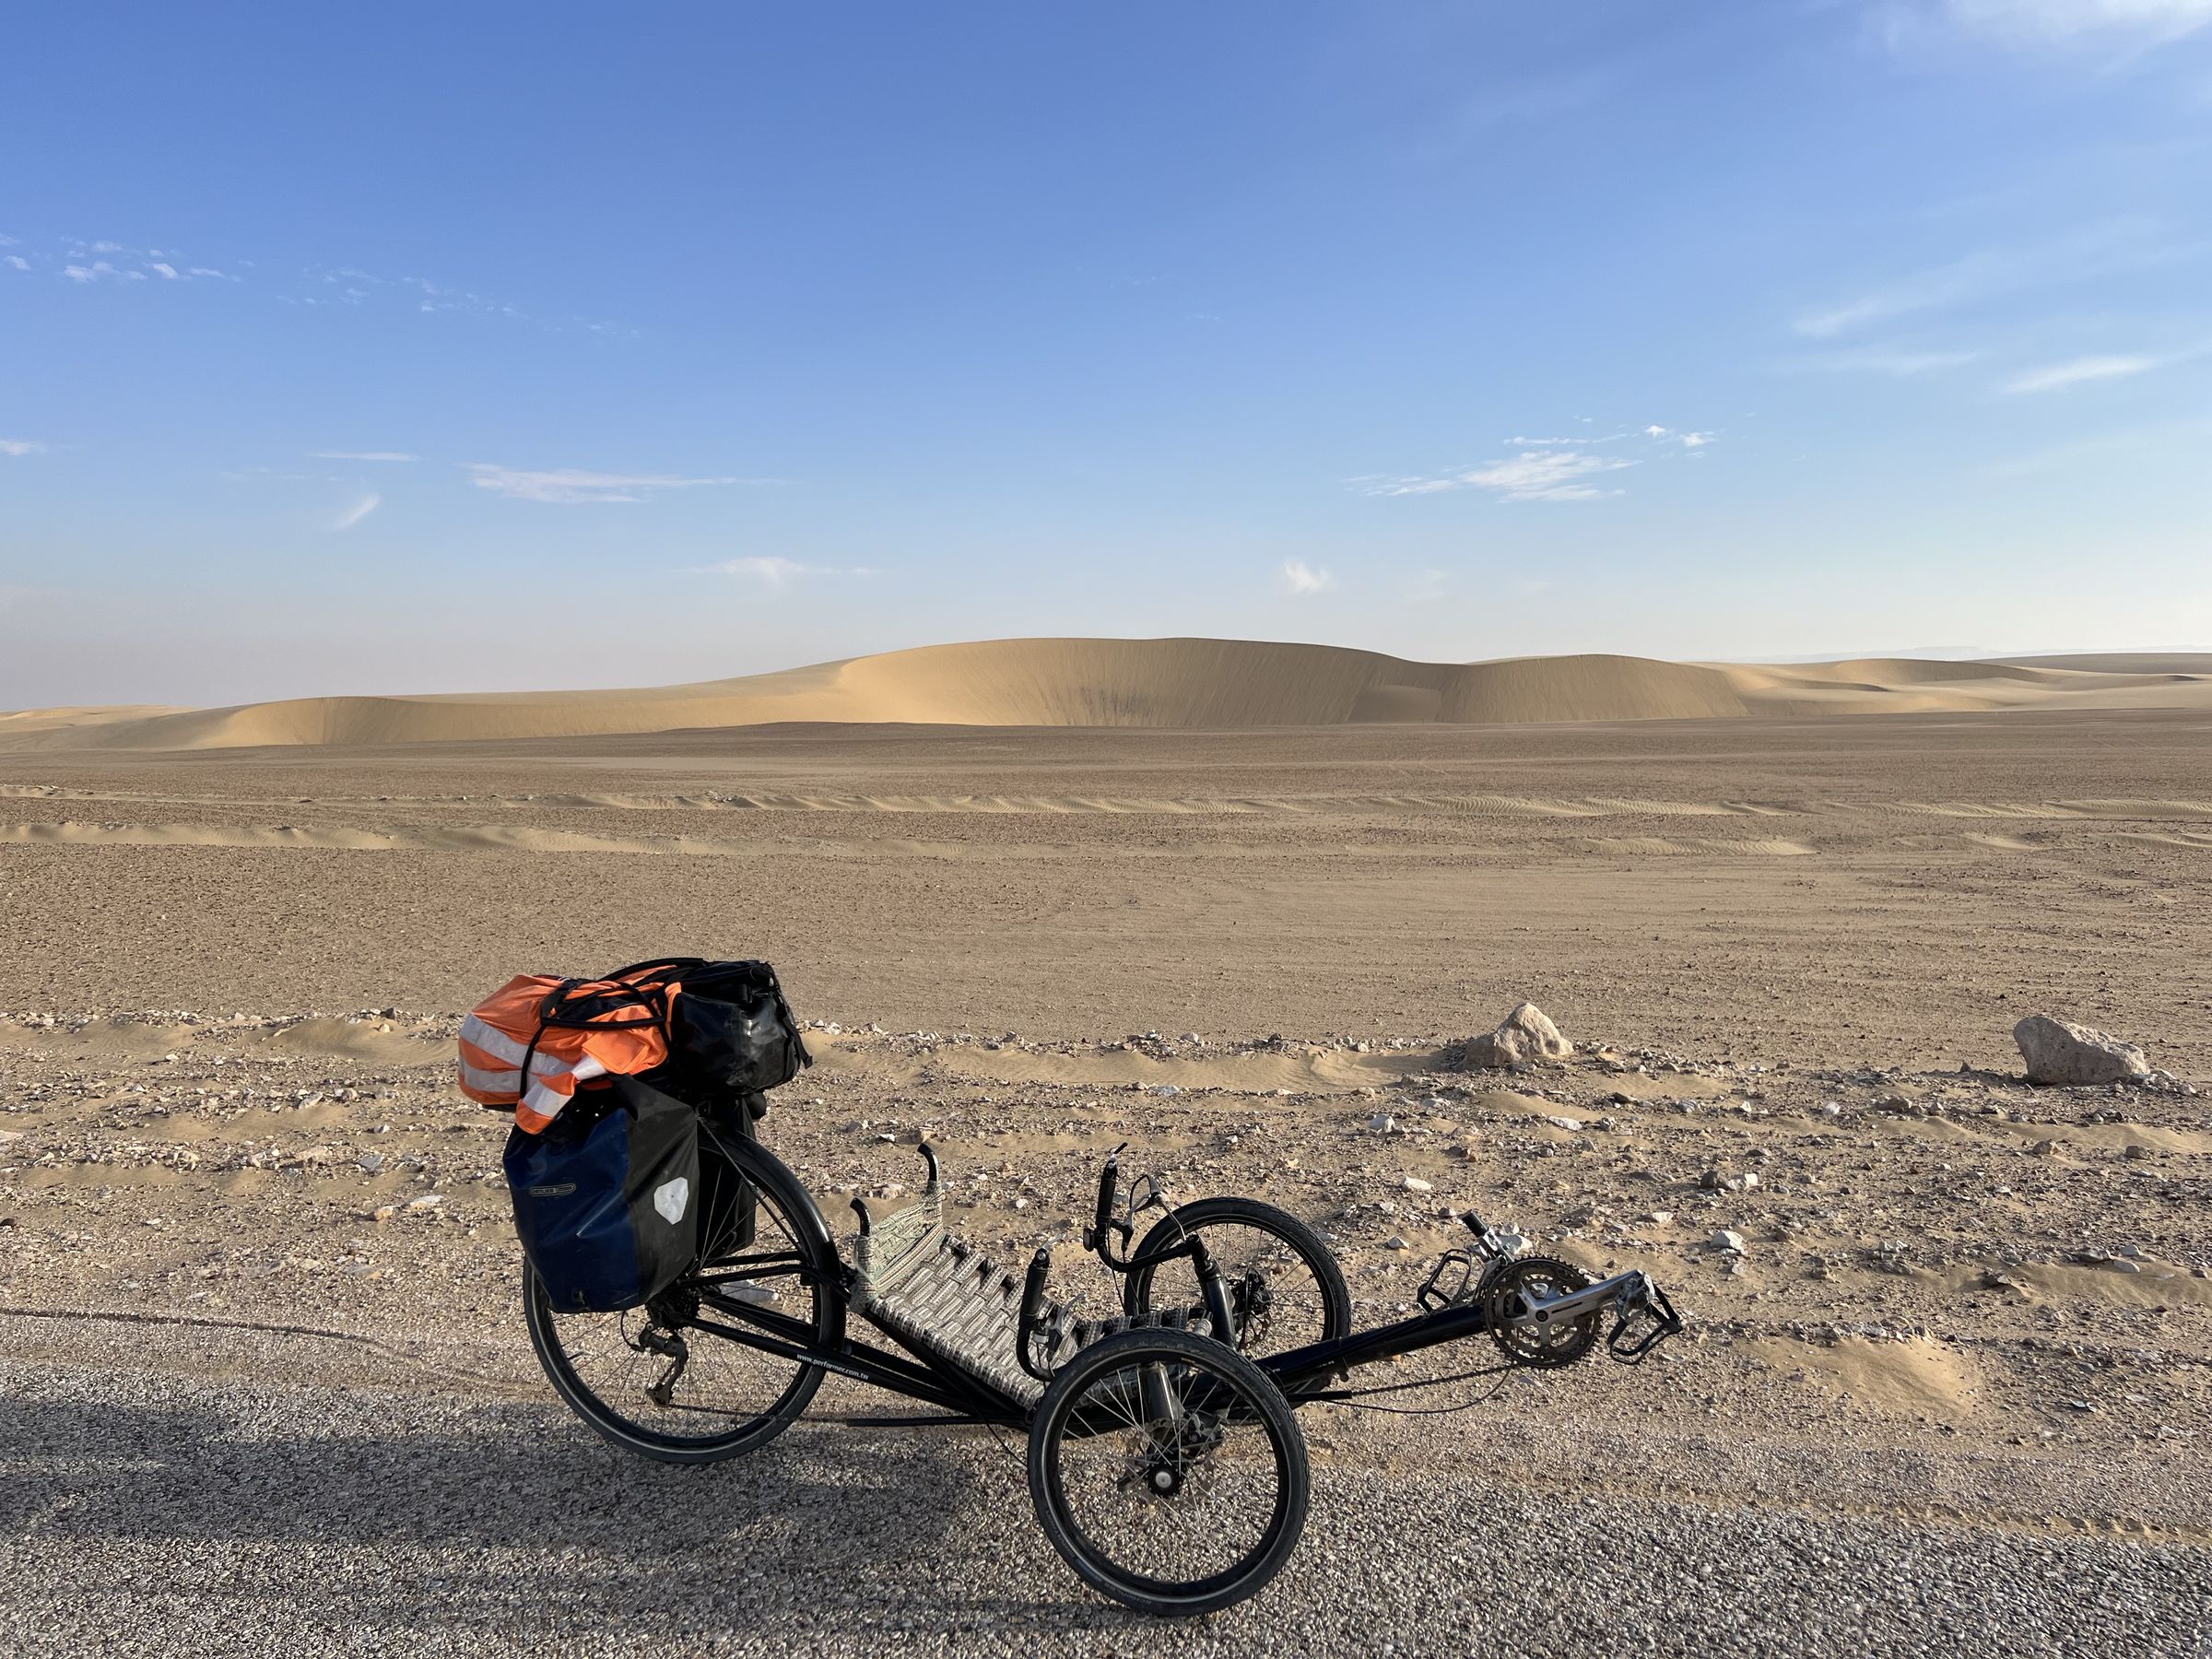 The Performer trike in the desert